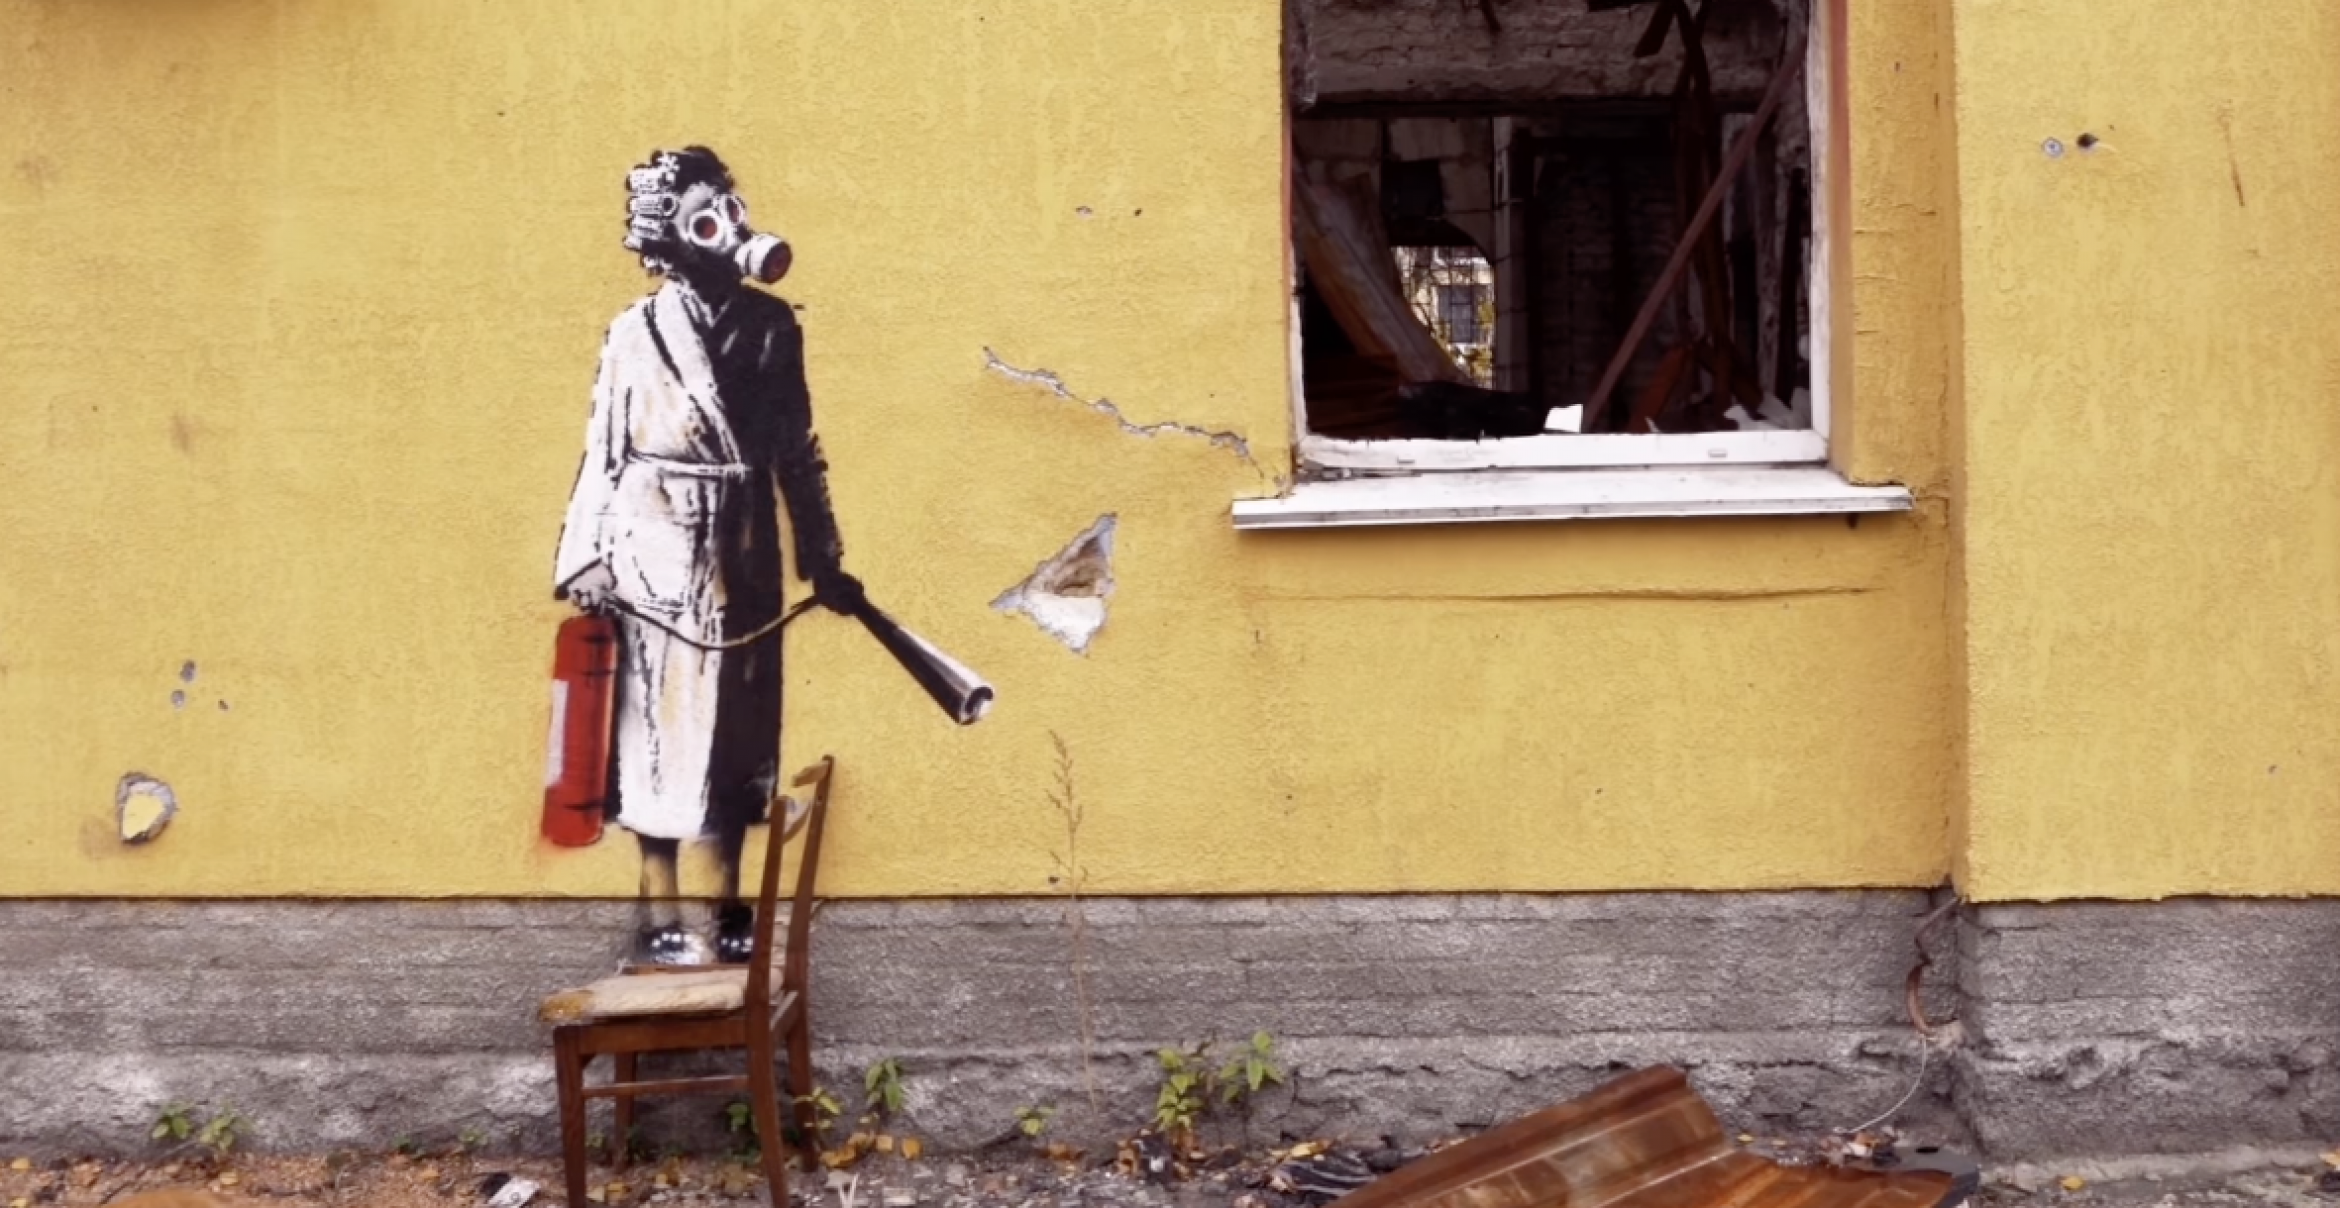 Neues Video von Banksy zeigt weitere Graffitis auf Trümmern in der Ukraine